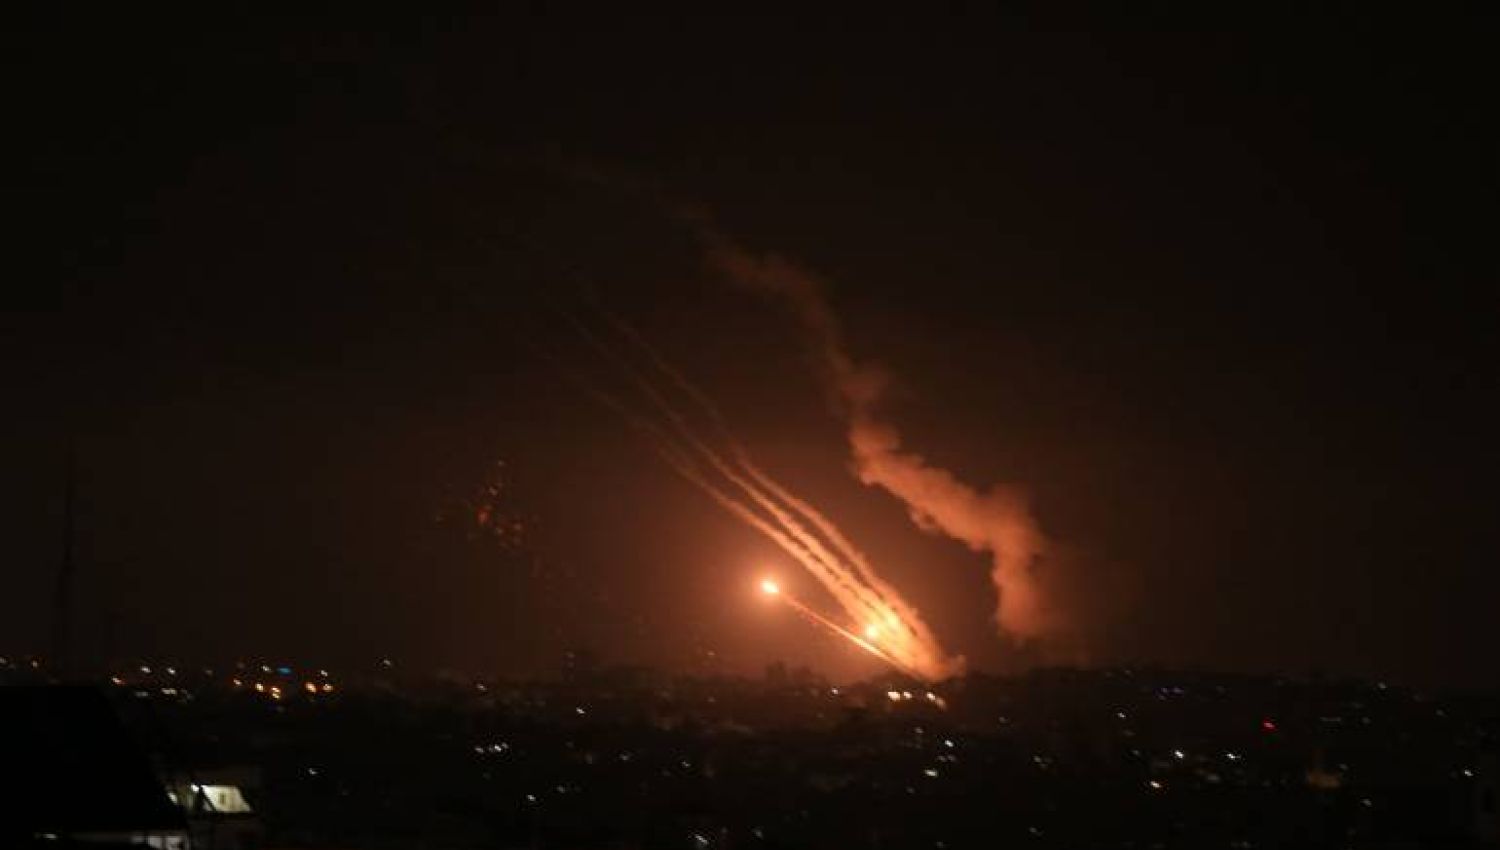 هآرتس: "الجهاد الإسلامي" اعتاد الرد على قتل نشطائه بإطلاق الصواريخ على "إسرائيل"